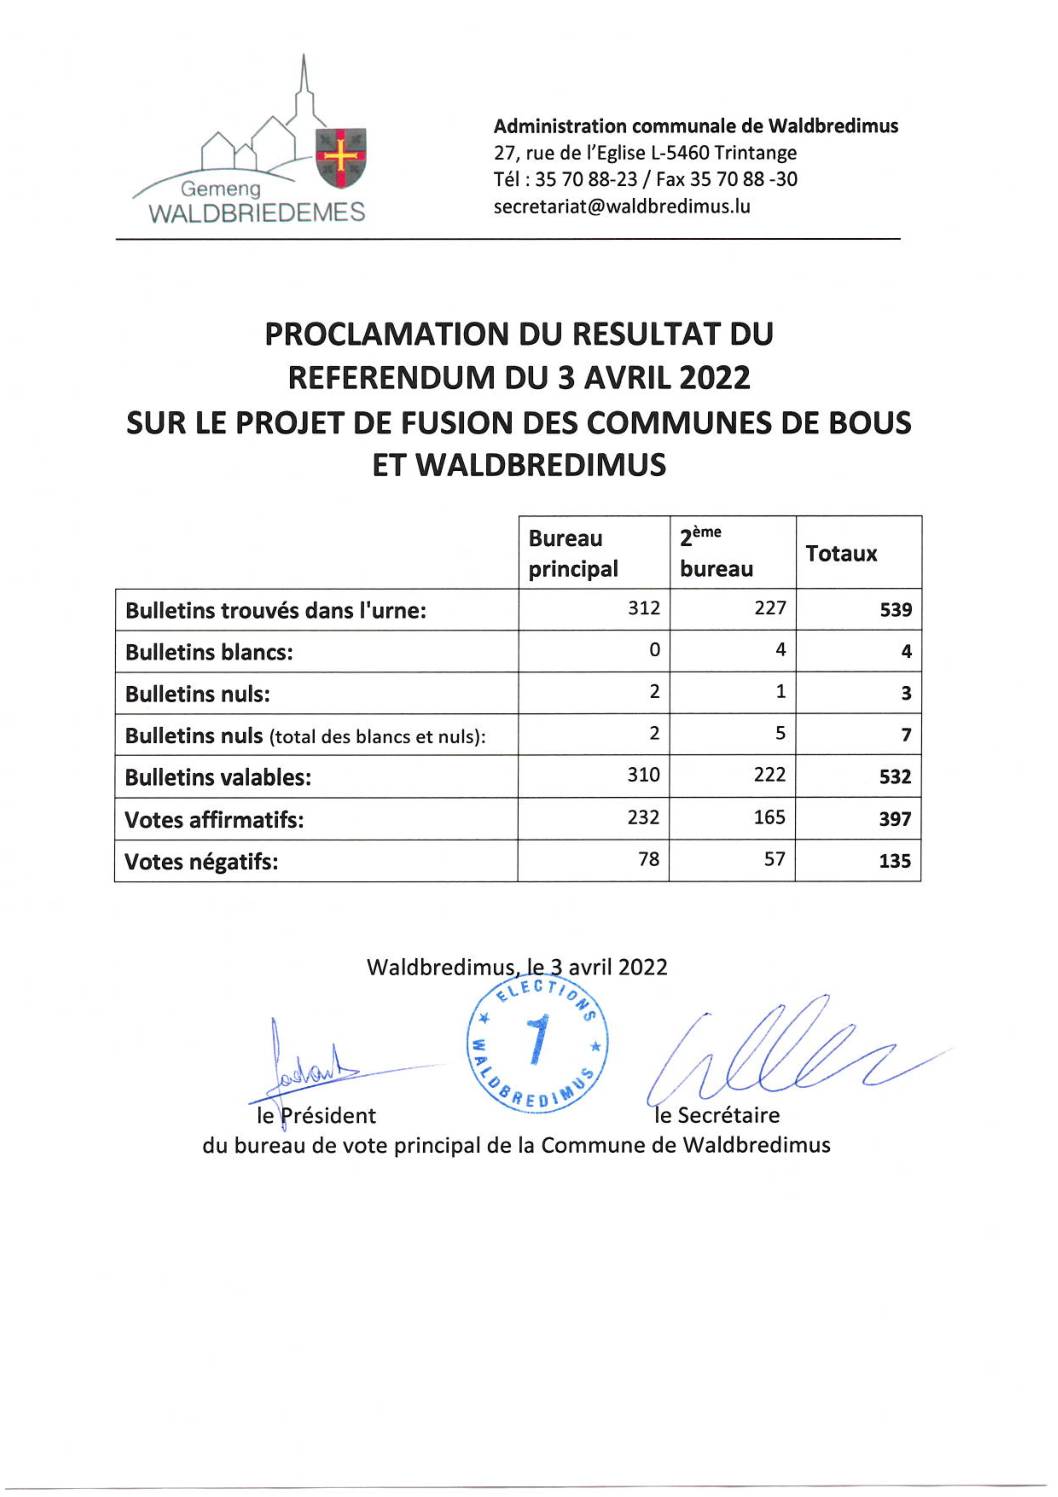 Référendum du 3 avril 2022 sur la fusion des communes de Bous et Waldbredimus - Résultat